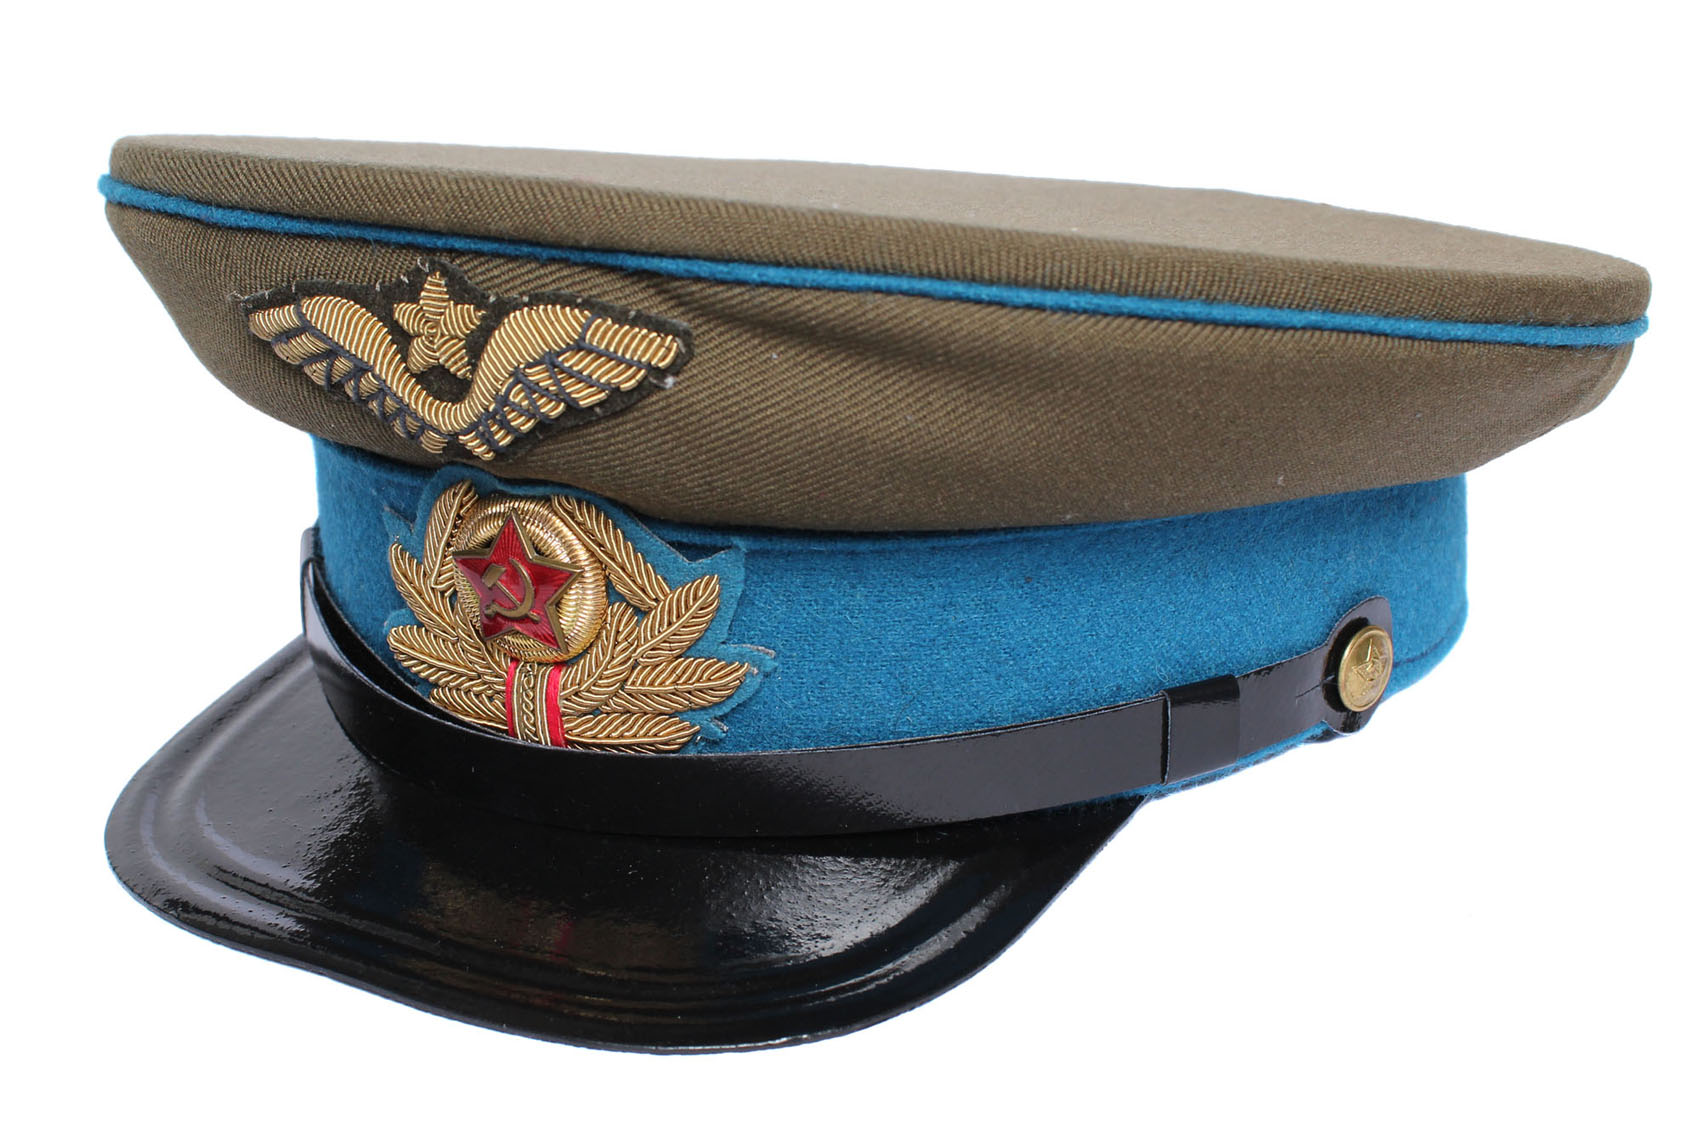 ロシア軍 空軍 将官 制帽